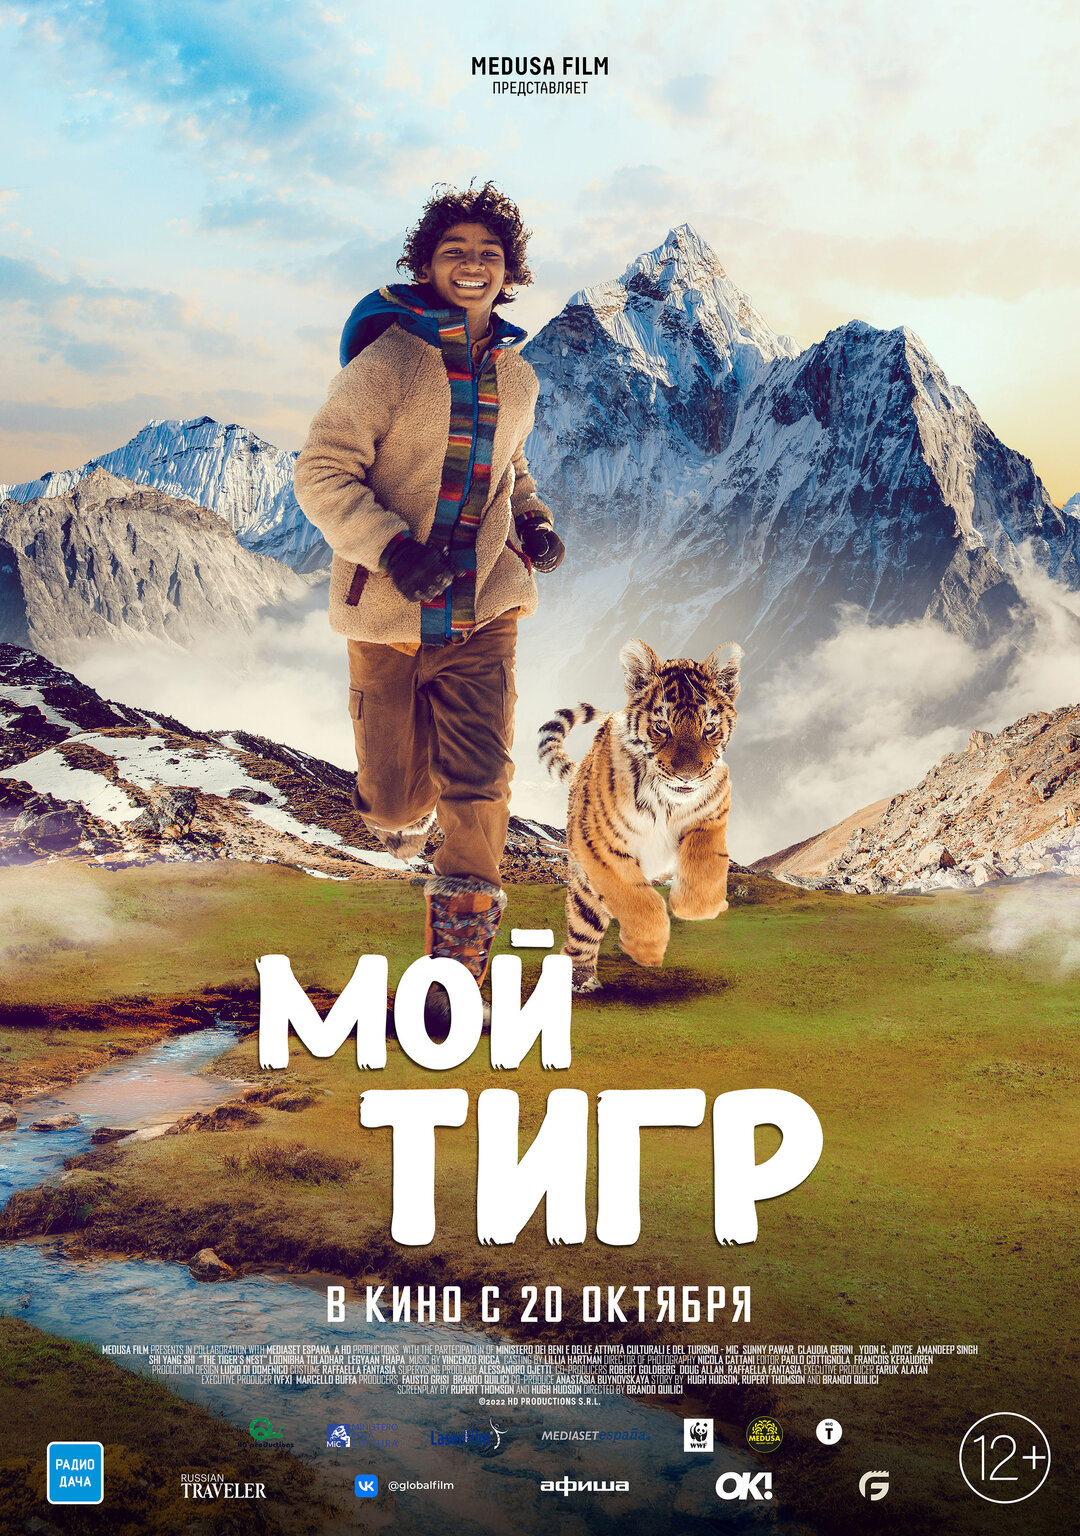 Обложка к картине "Мой тигр"